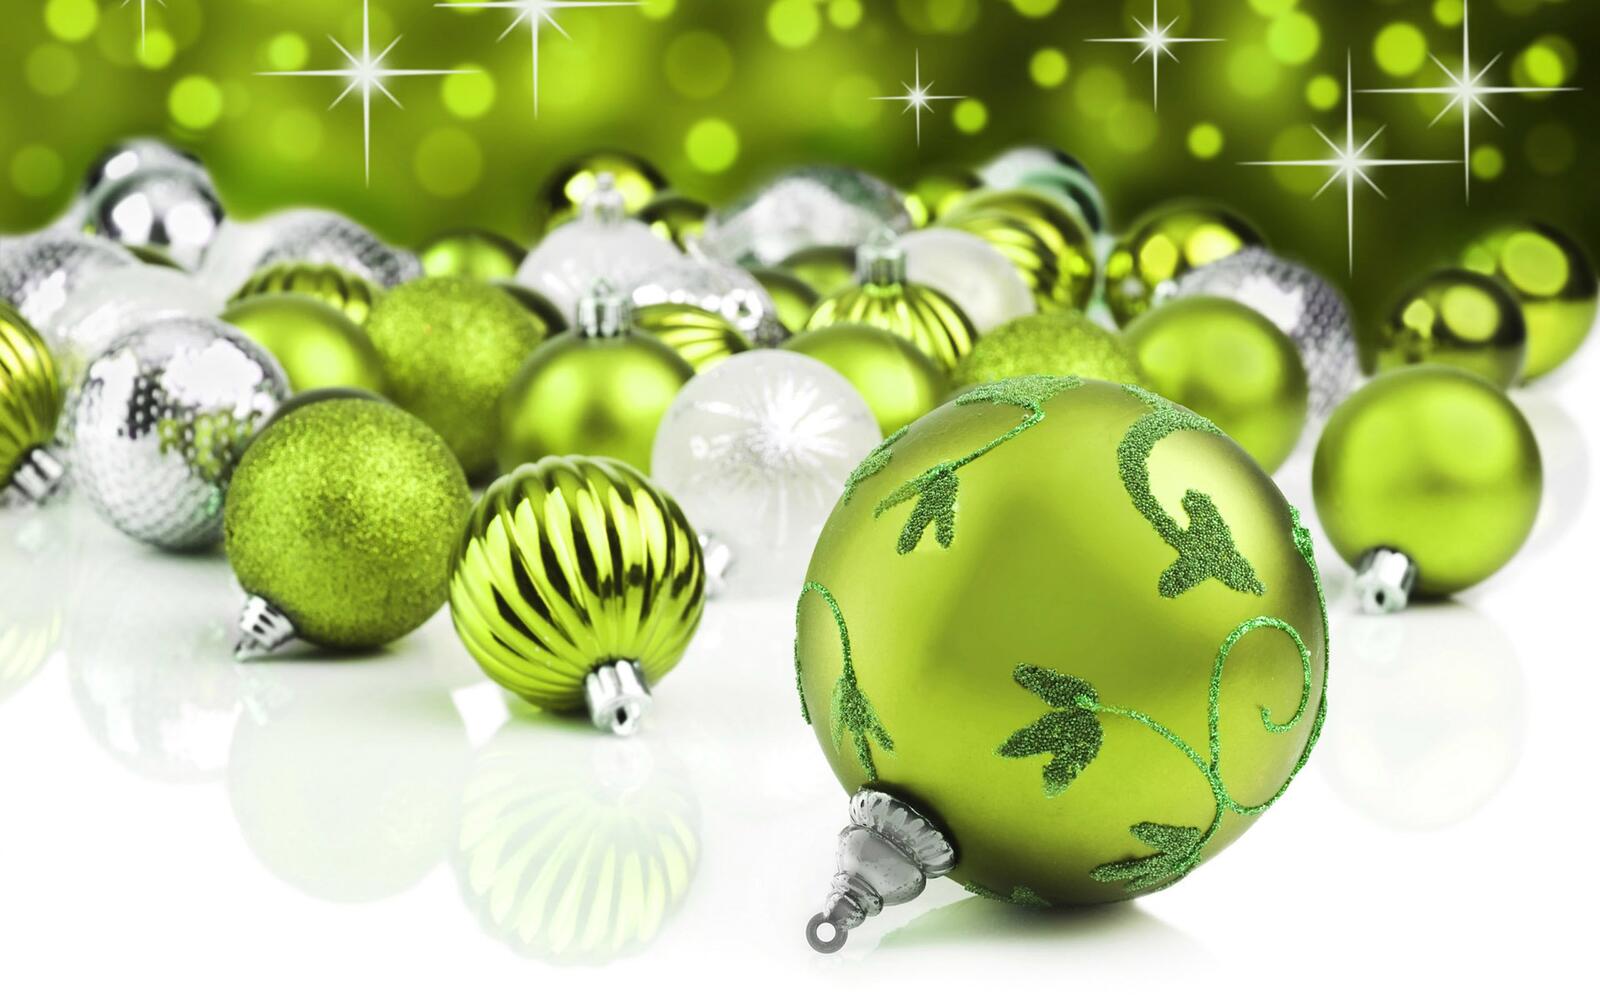 Бесплатное фото Картинка с новогодними игрушками зеленого цвета